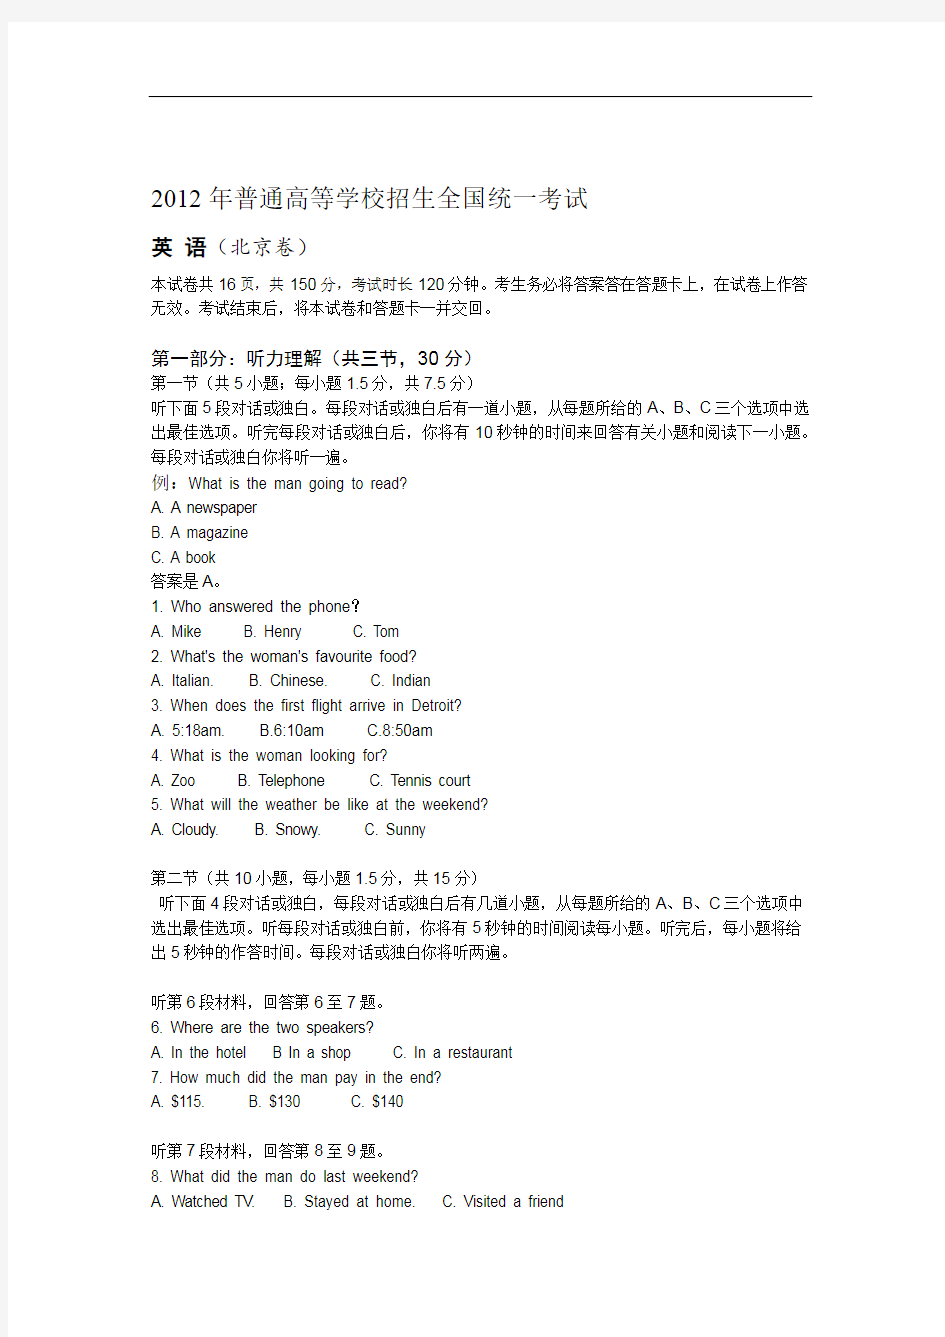 完整word版2012年北京高考英语试题及答案 修订版